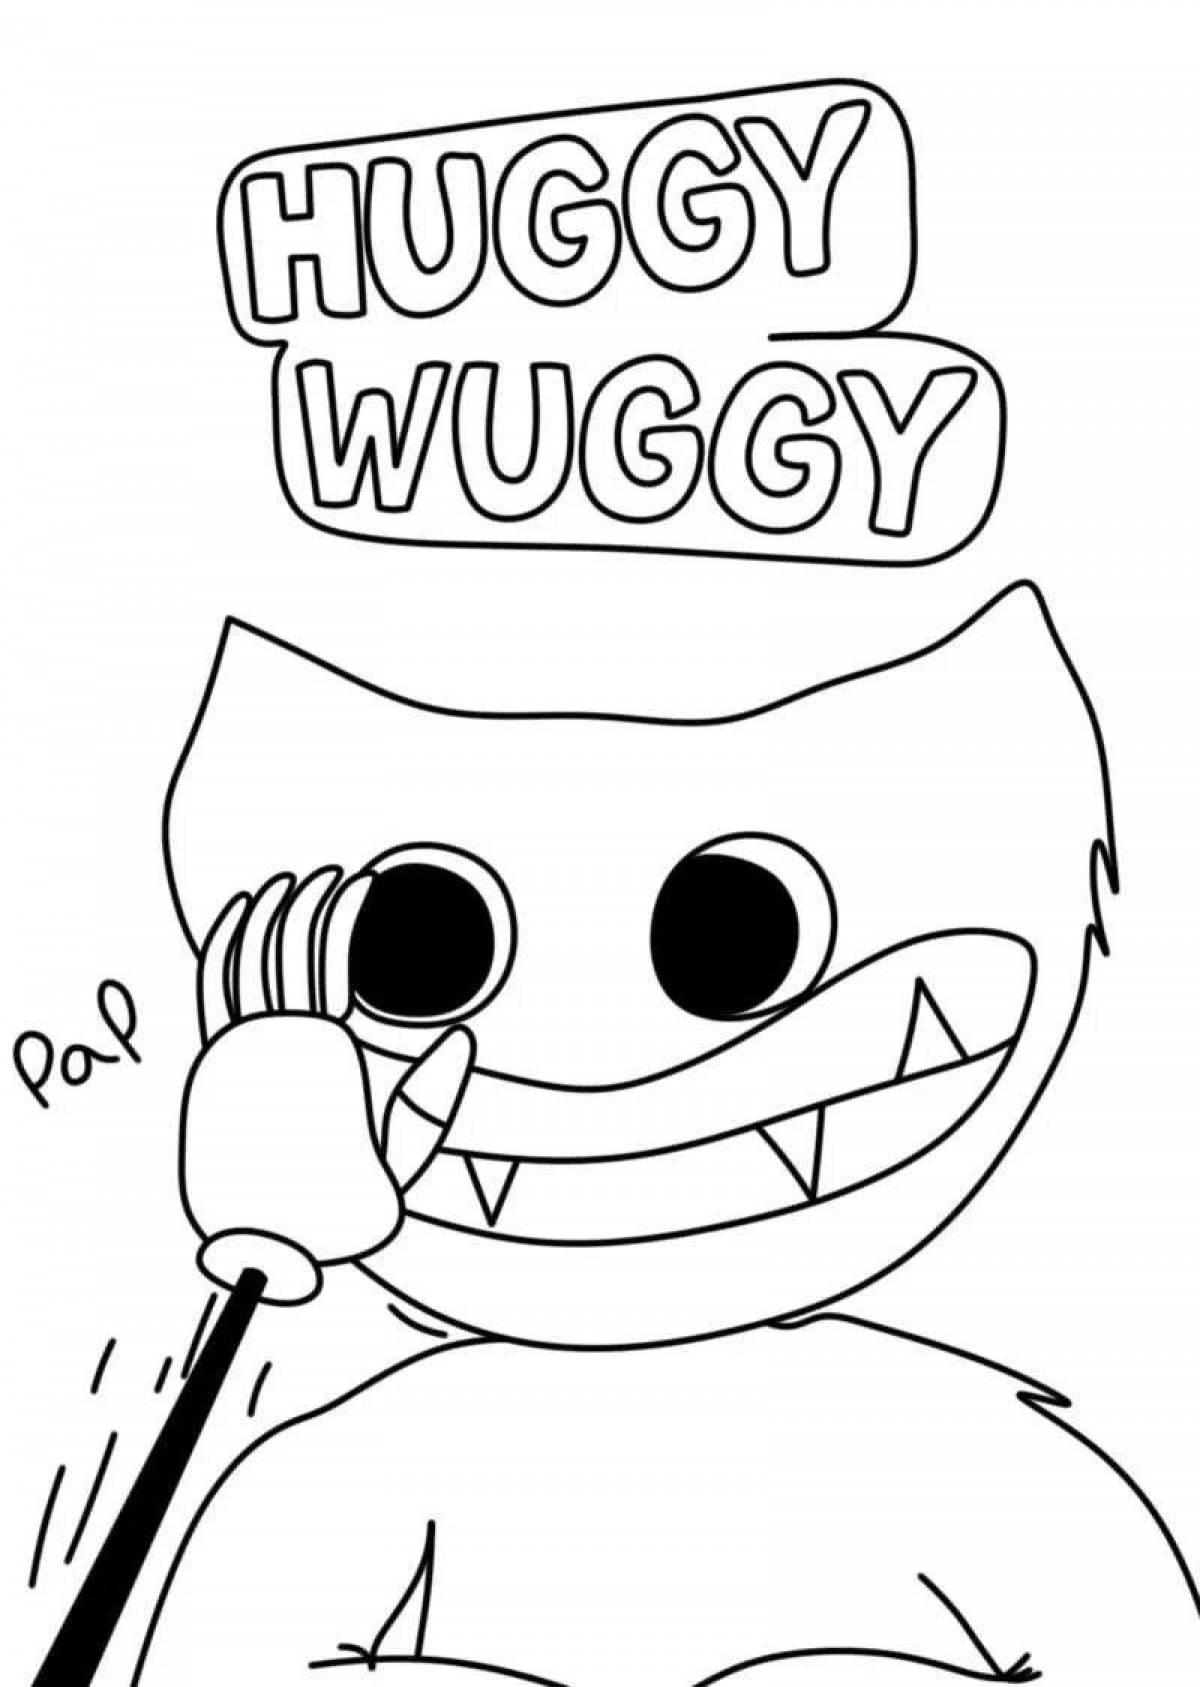 Fun coloring huggy waggi and kisi misi